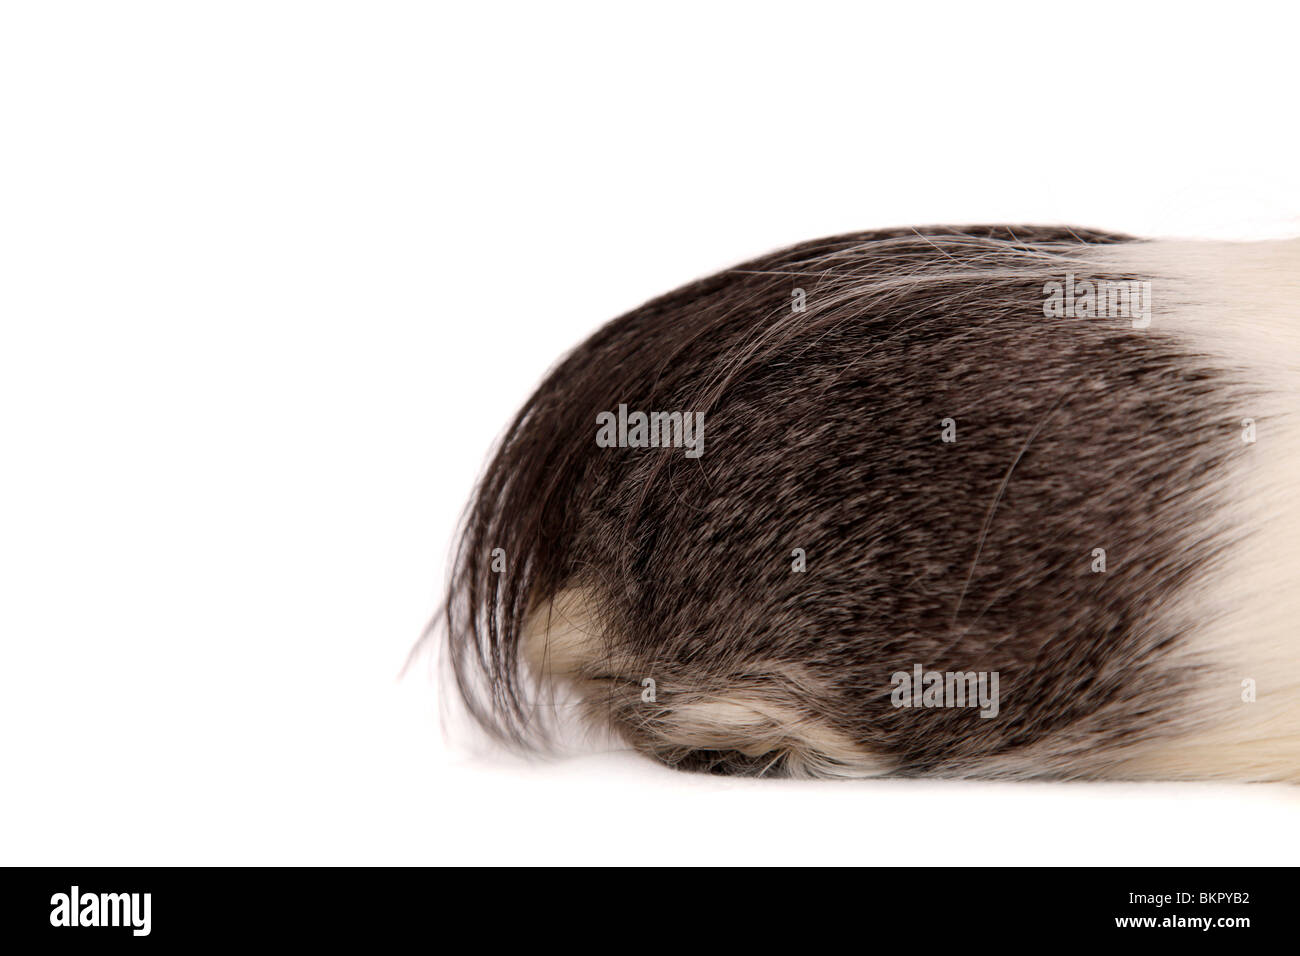 Cuy - Riesenmeerschwein Foto Stock